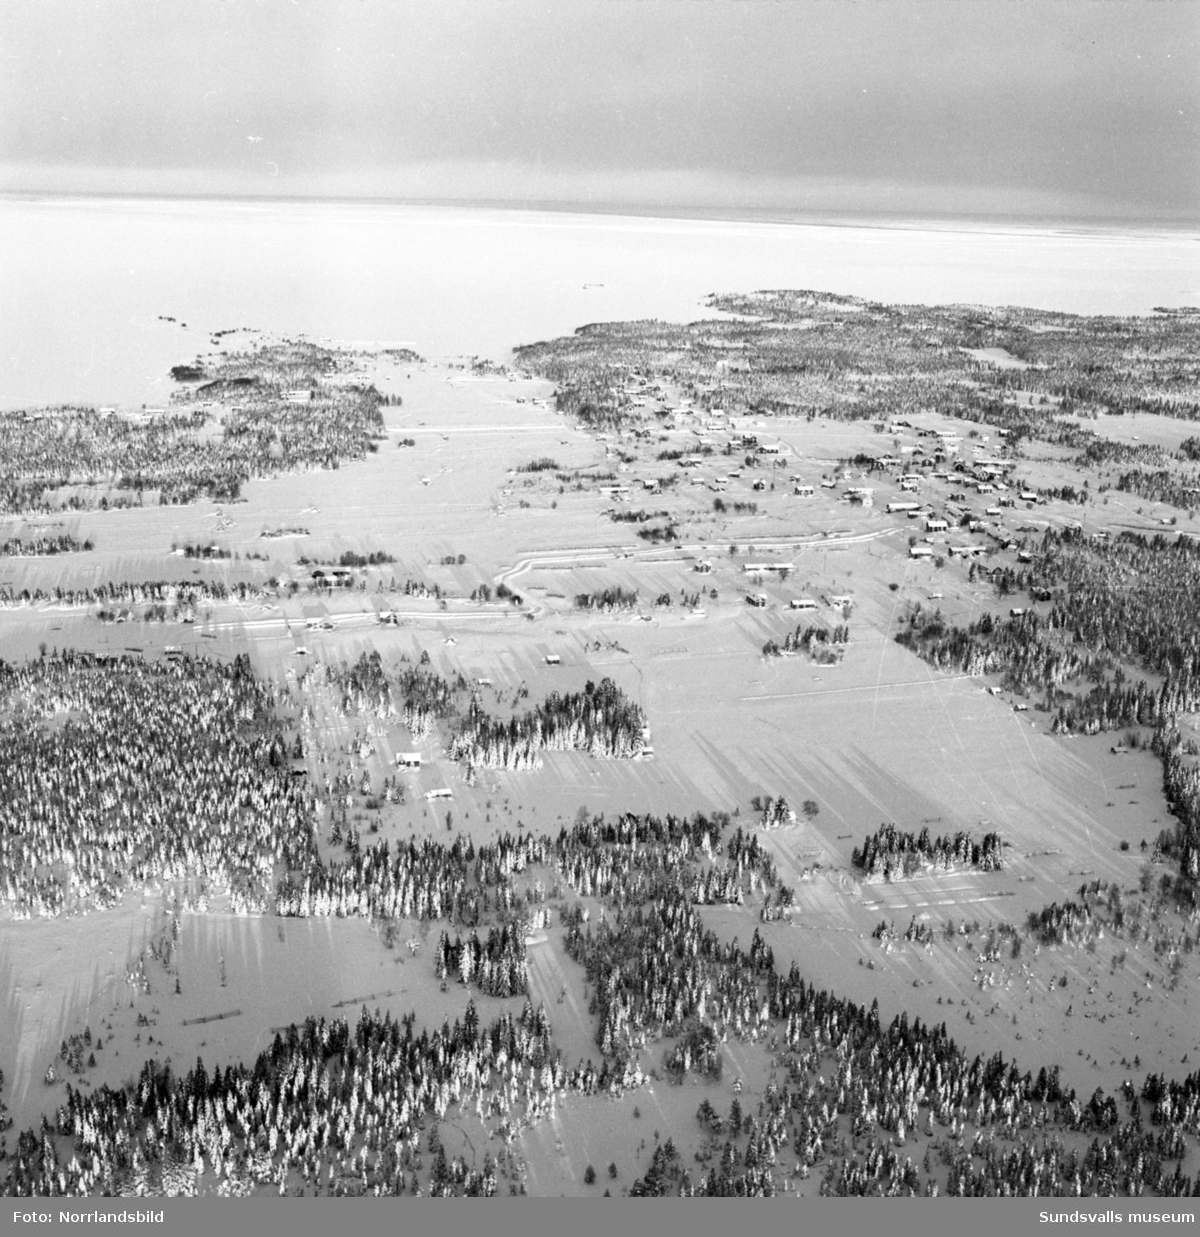 Flygfoton över issituationen till havs mellan Sundsvall och Örnsköldsvik. Även snö- och isläget utefter älvarna exempelvis Järkvissle, Liden och Bergeforsen.